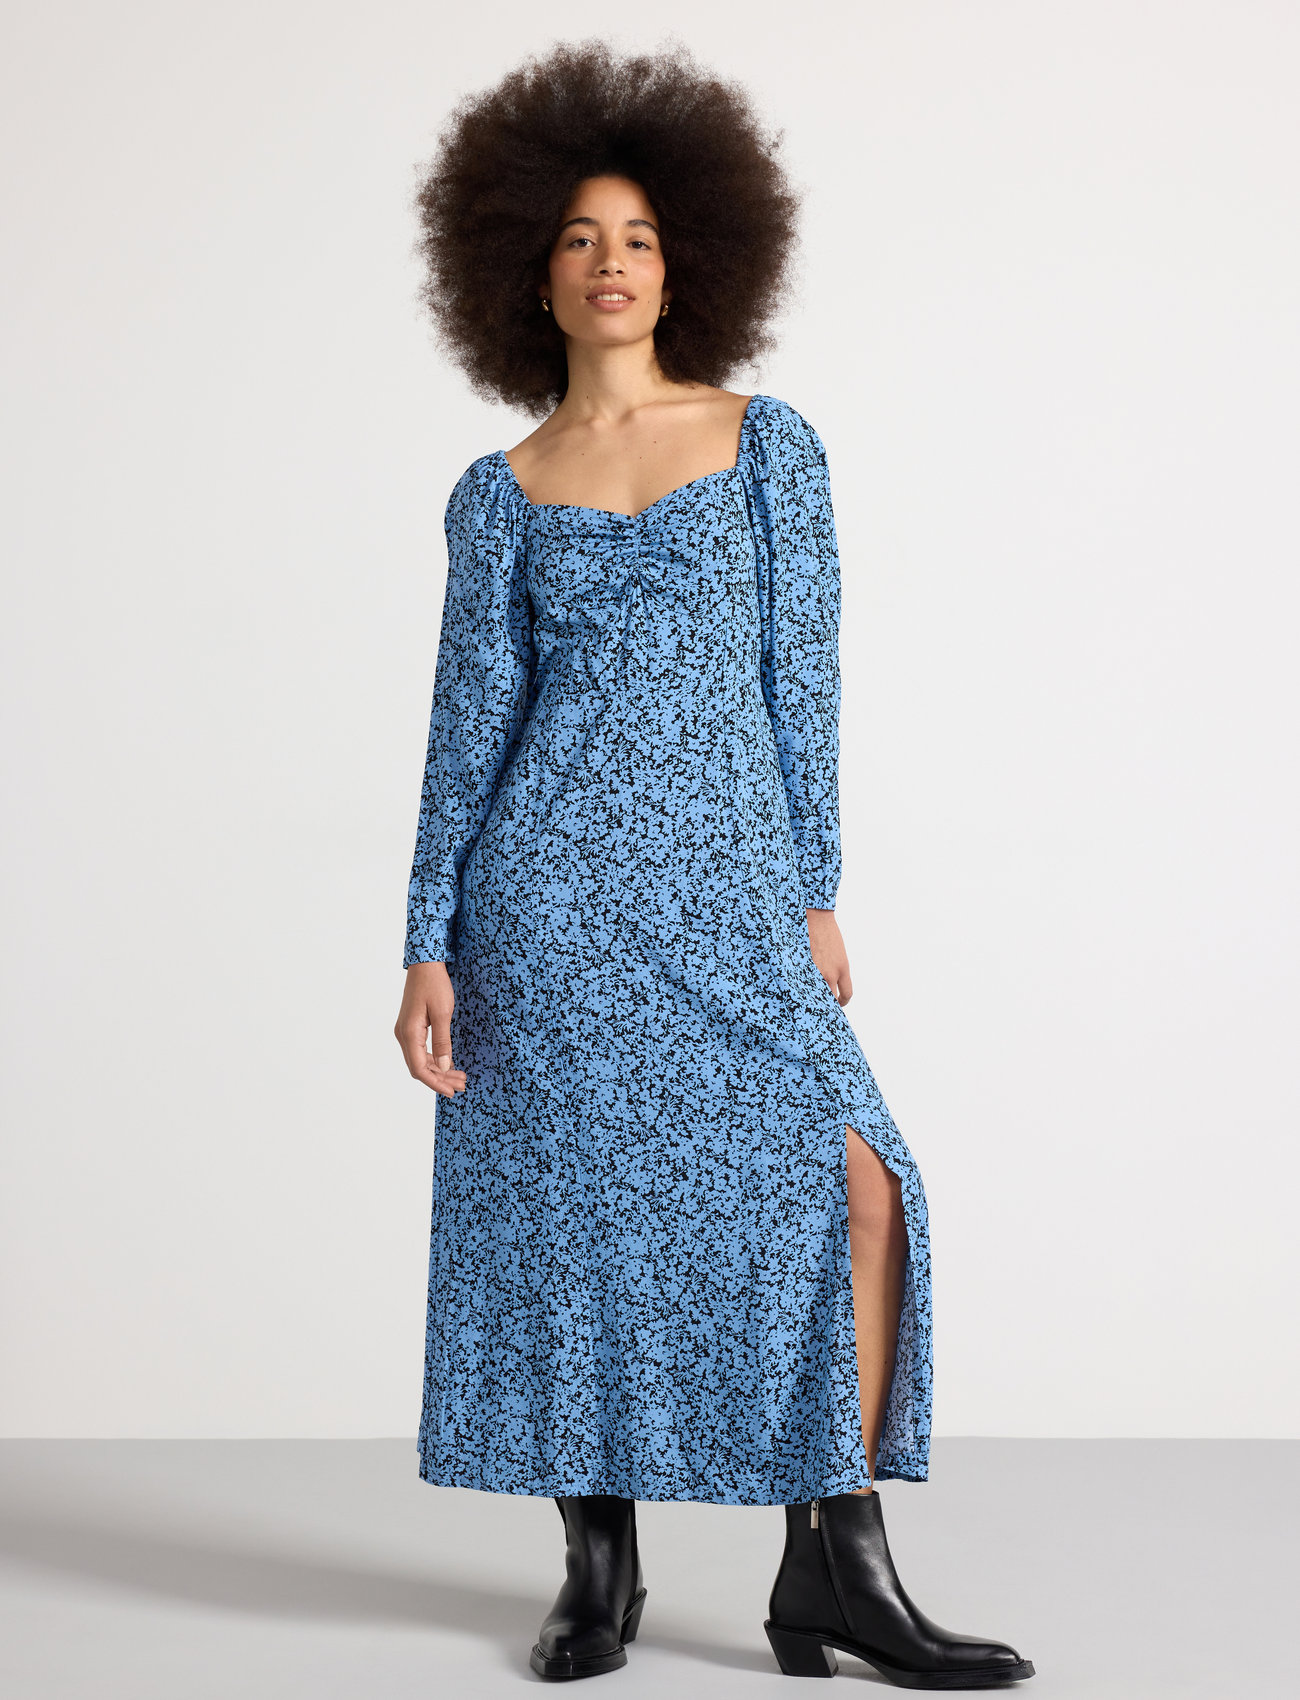 Lindex - Dress Rosie - garas kleitas - light dusty blue - 1